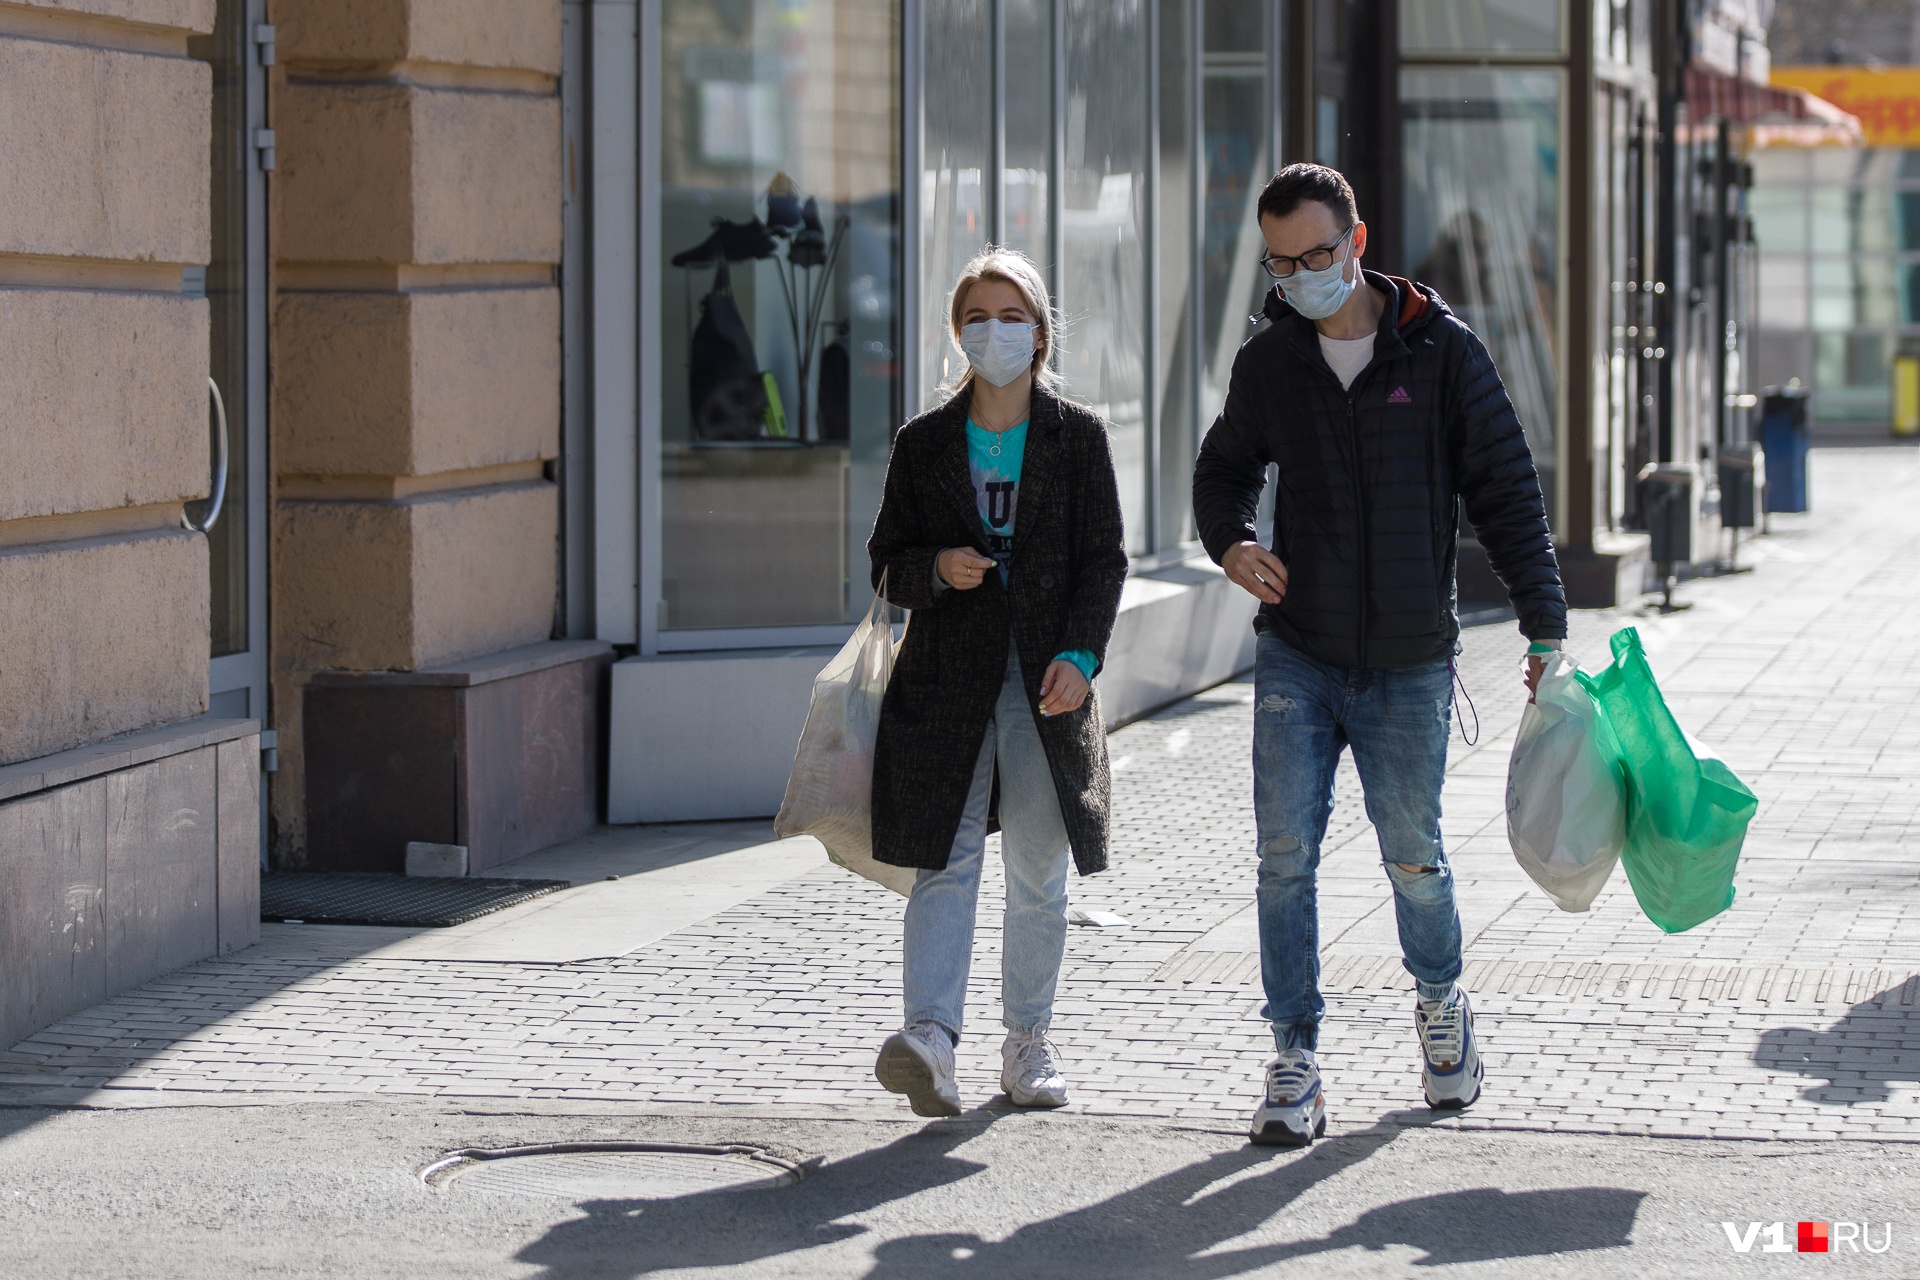 Перевозчики в Красноярске рассказали о бедственном положении. 58-й день коронавируса в Красноярске